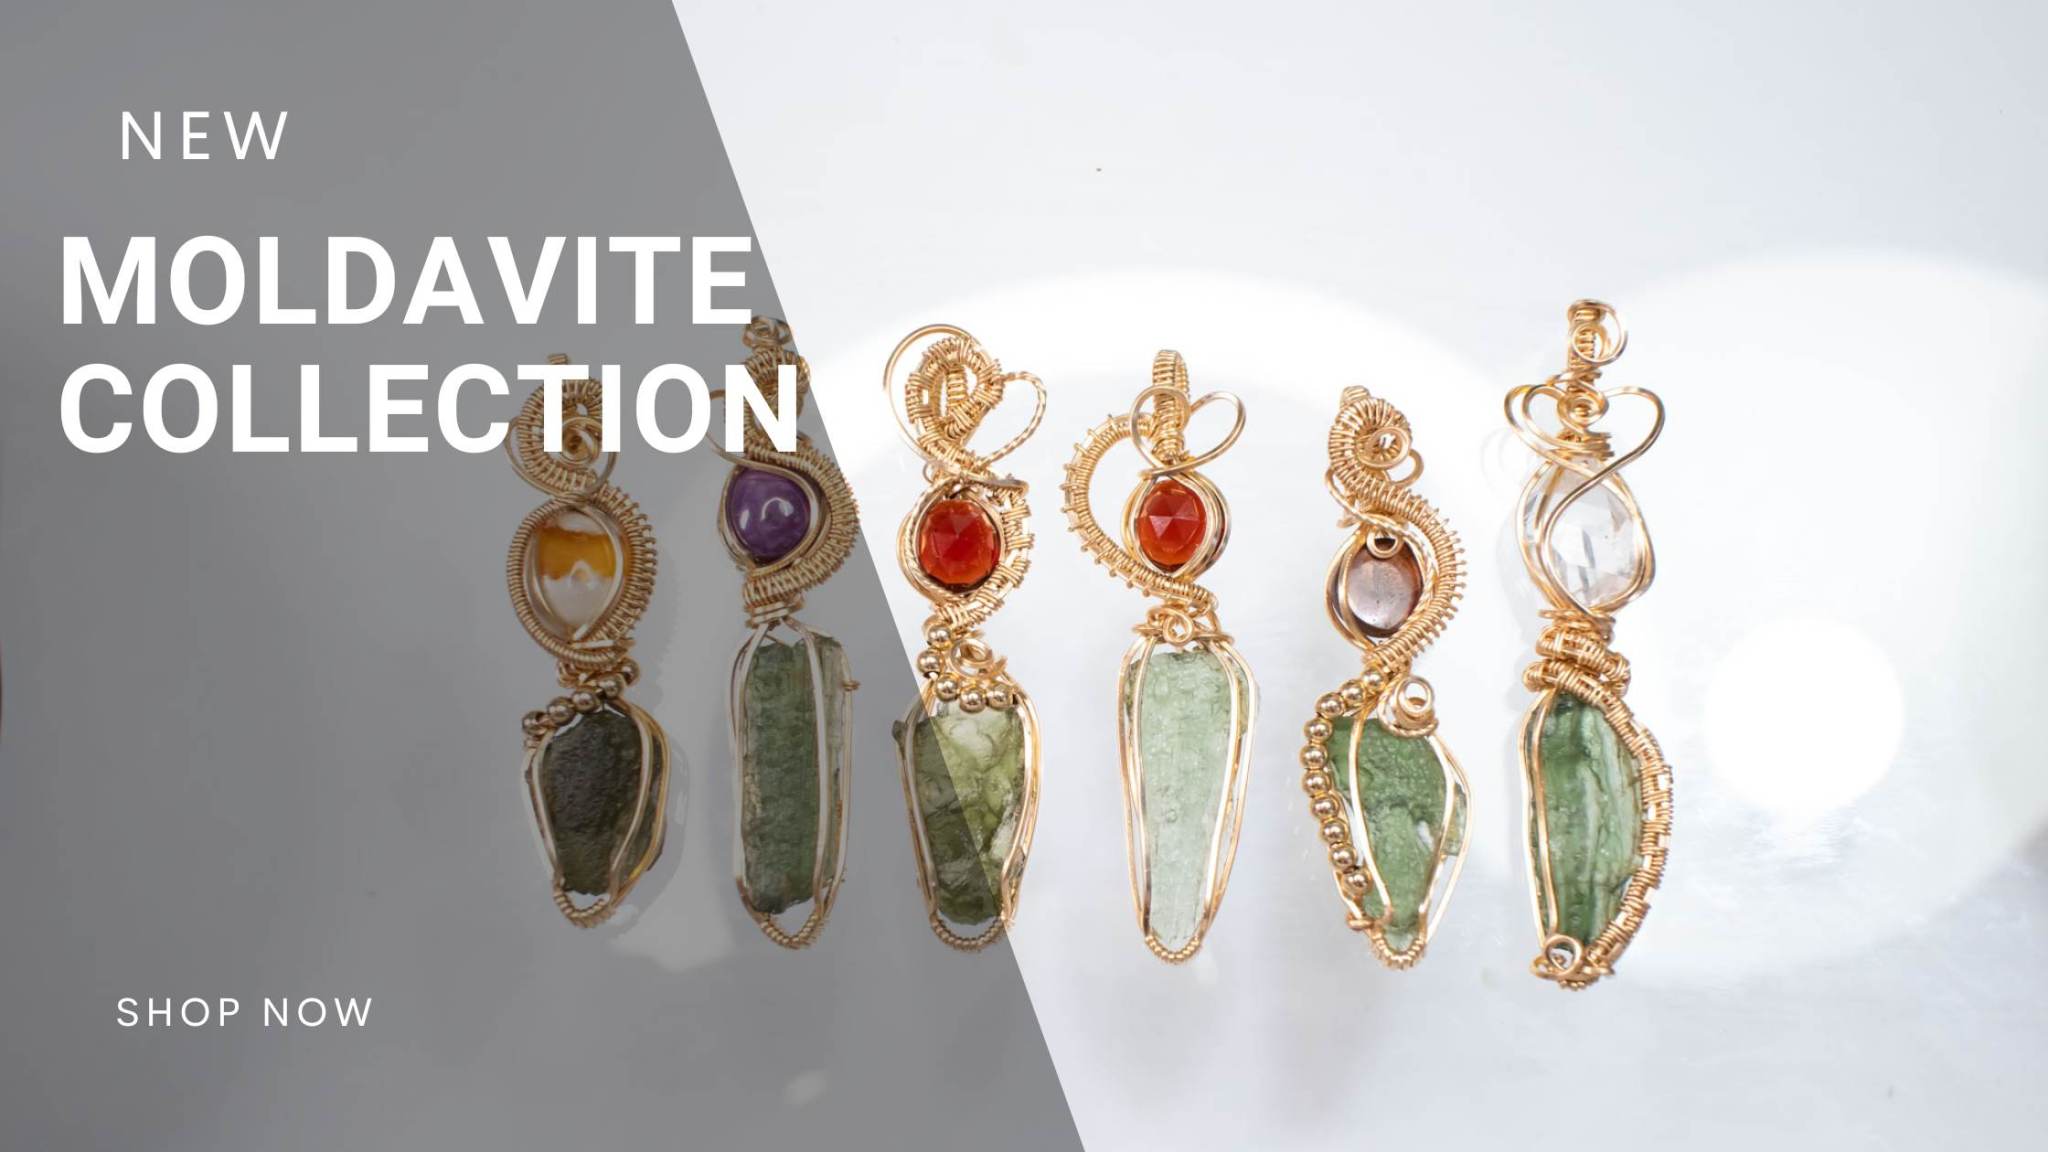 Moldavite Art Jewelry - handmade pendants, rings and earrings